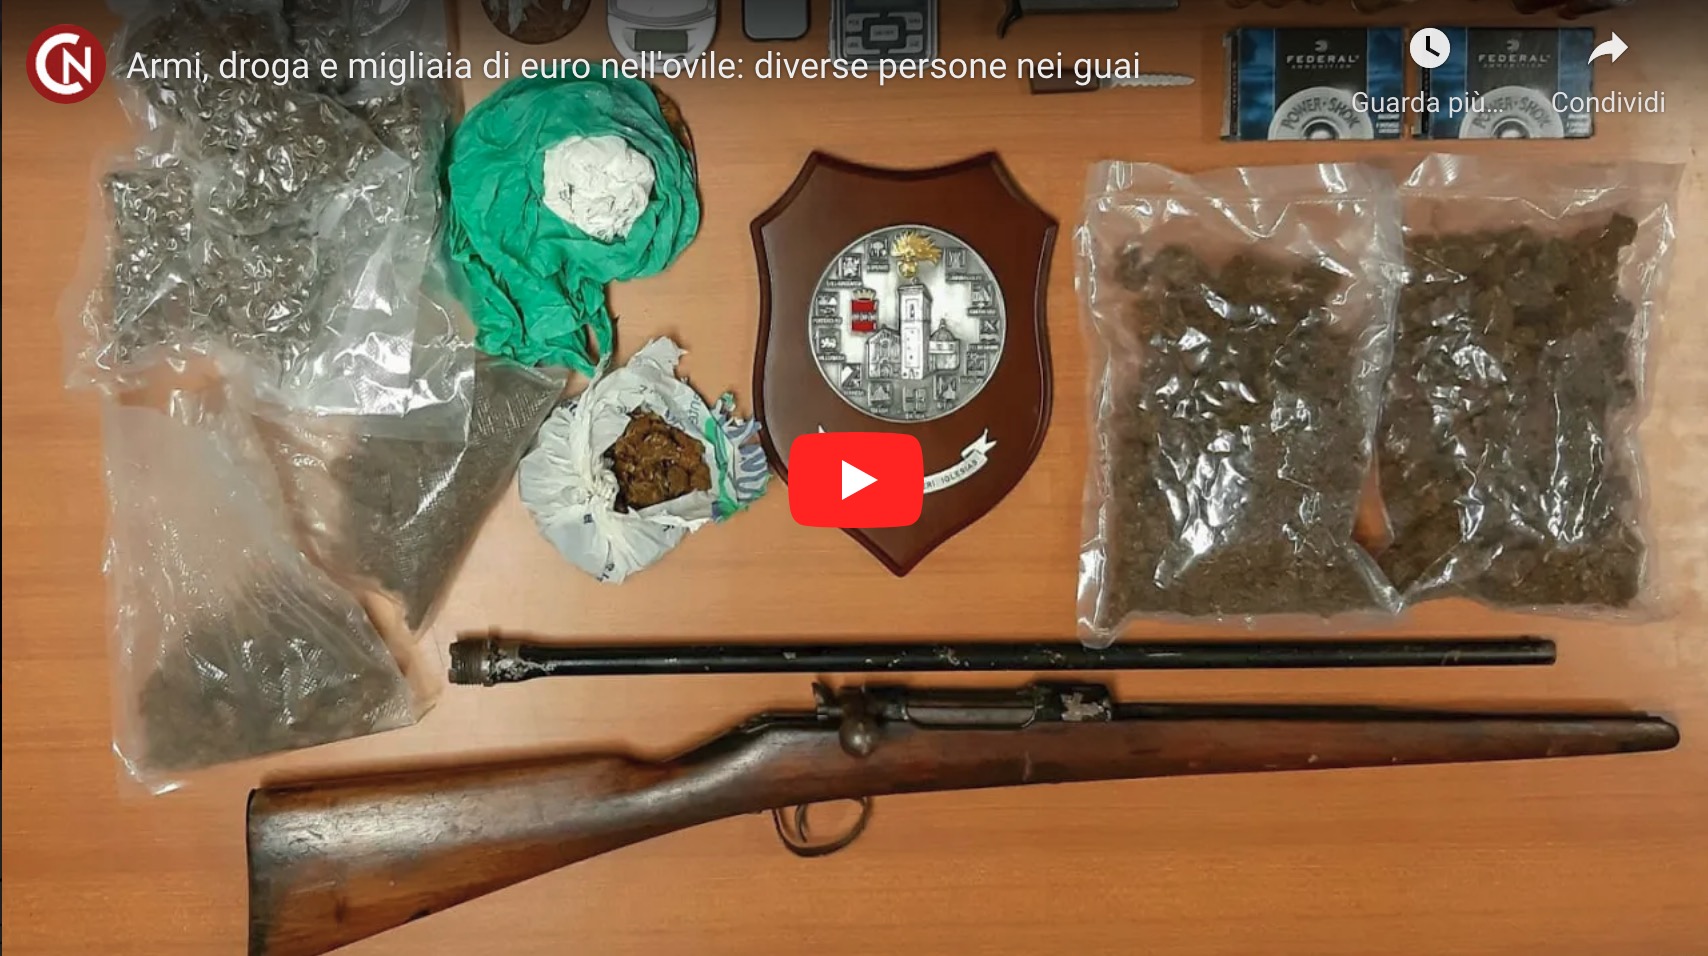 Nell’ovile cocaina, marijuana, armi e migliaia di euro: diverse persone nei guai a Siliqua e nel Nuorese